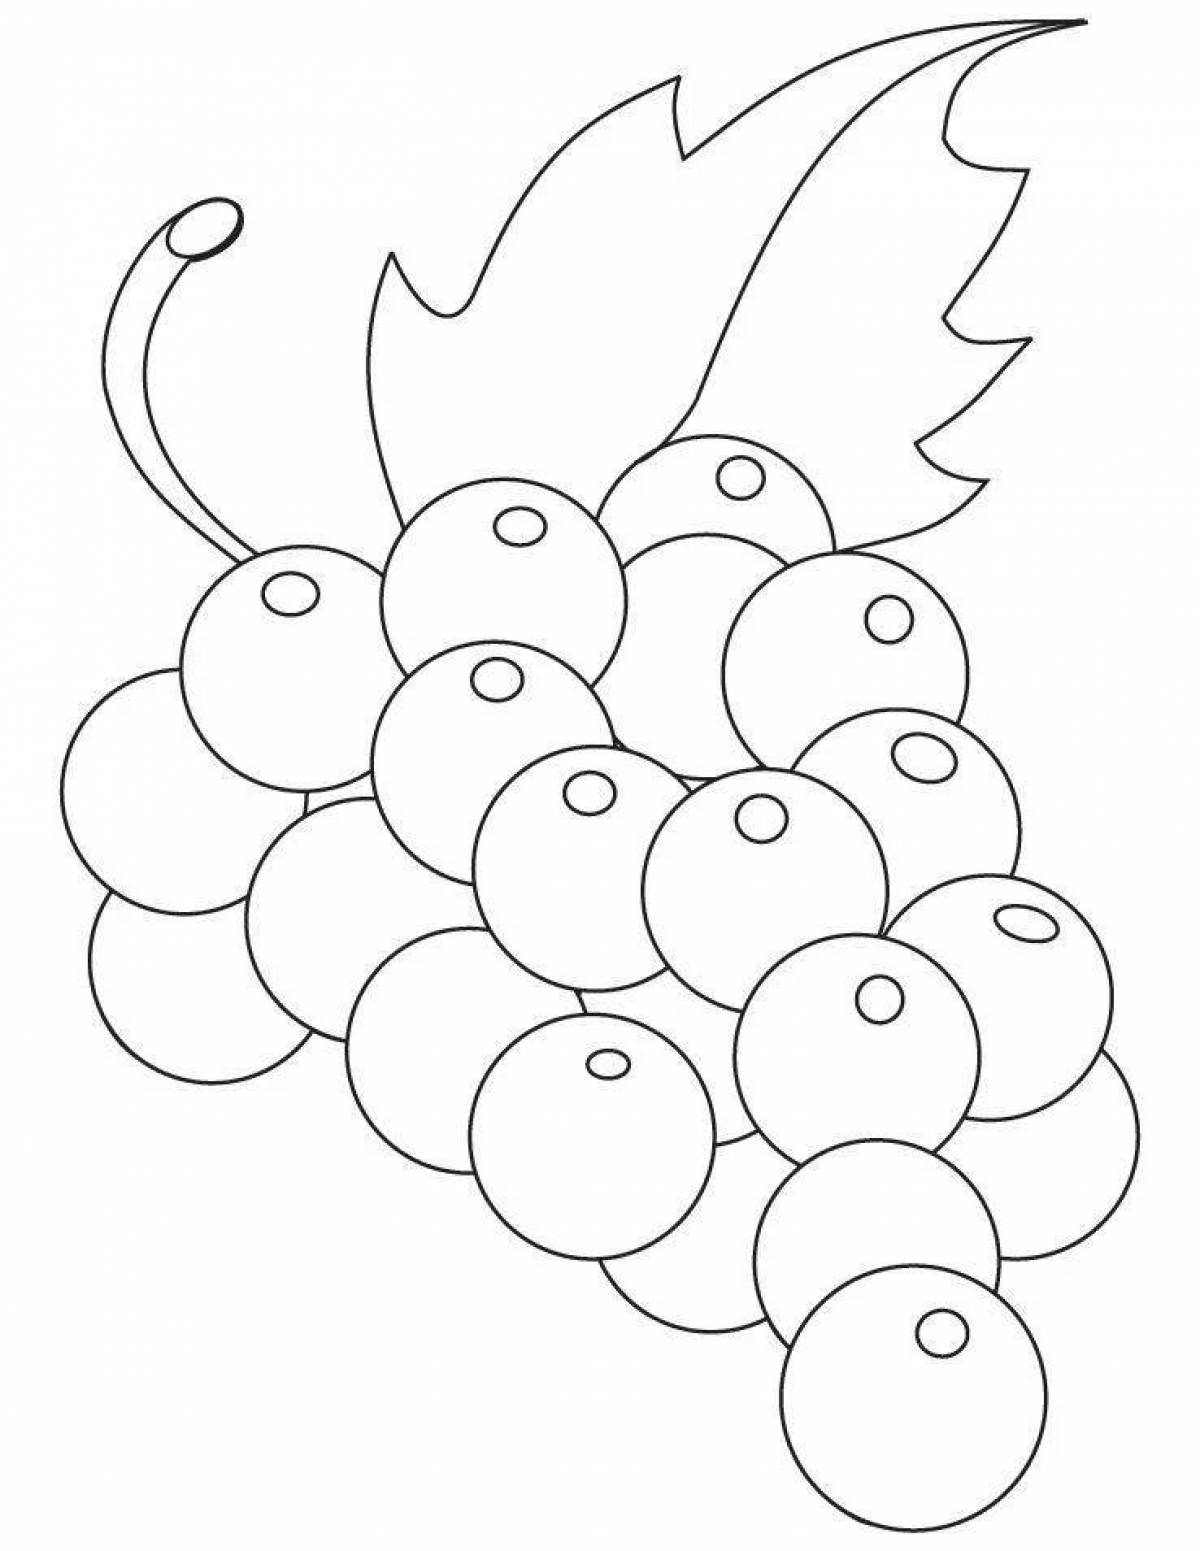 Трафарет фрукты для рисования